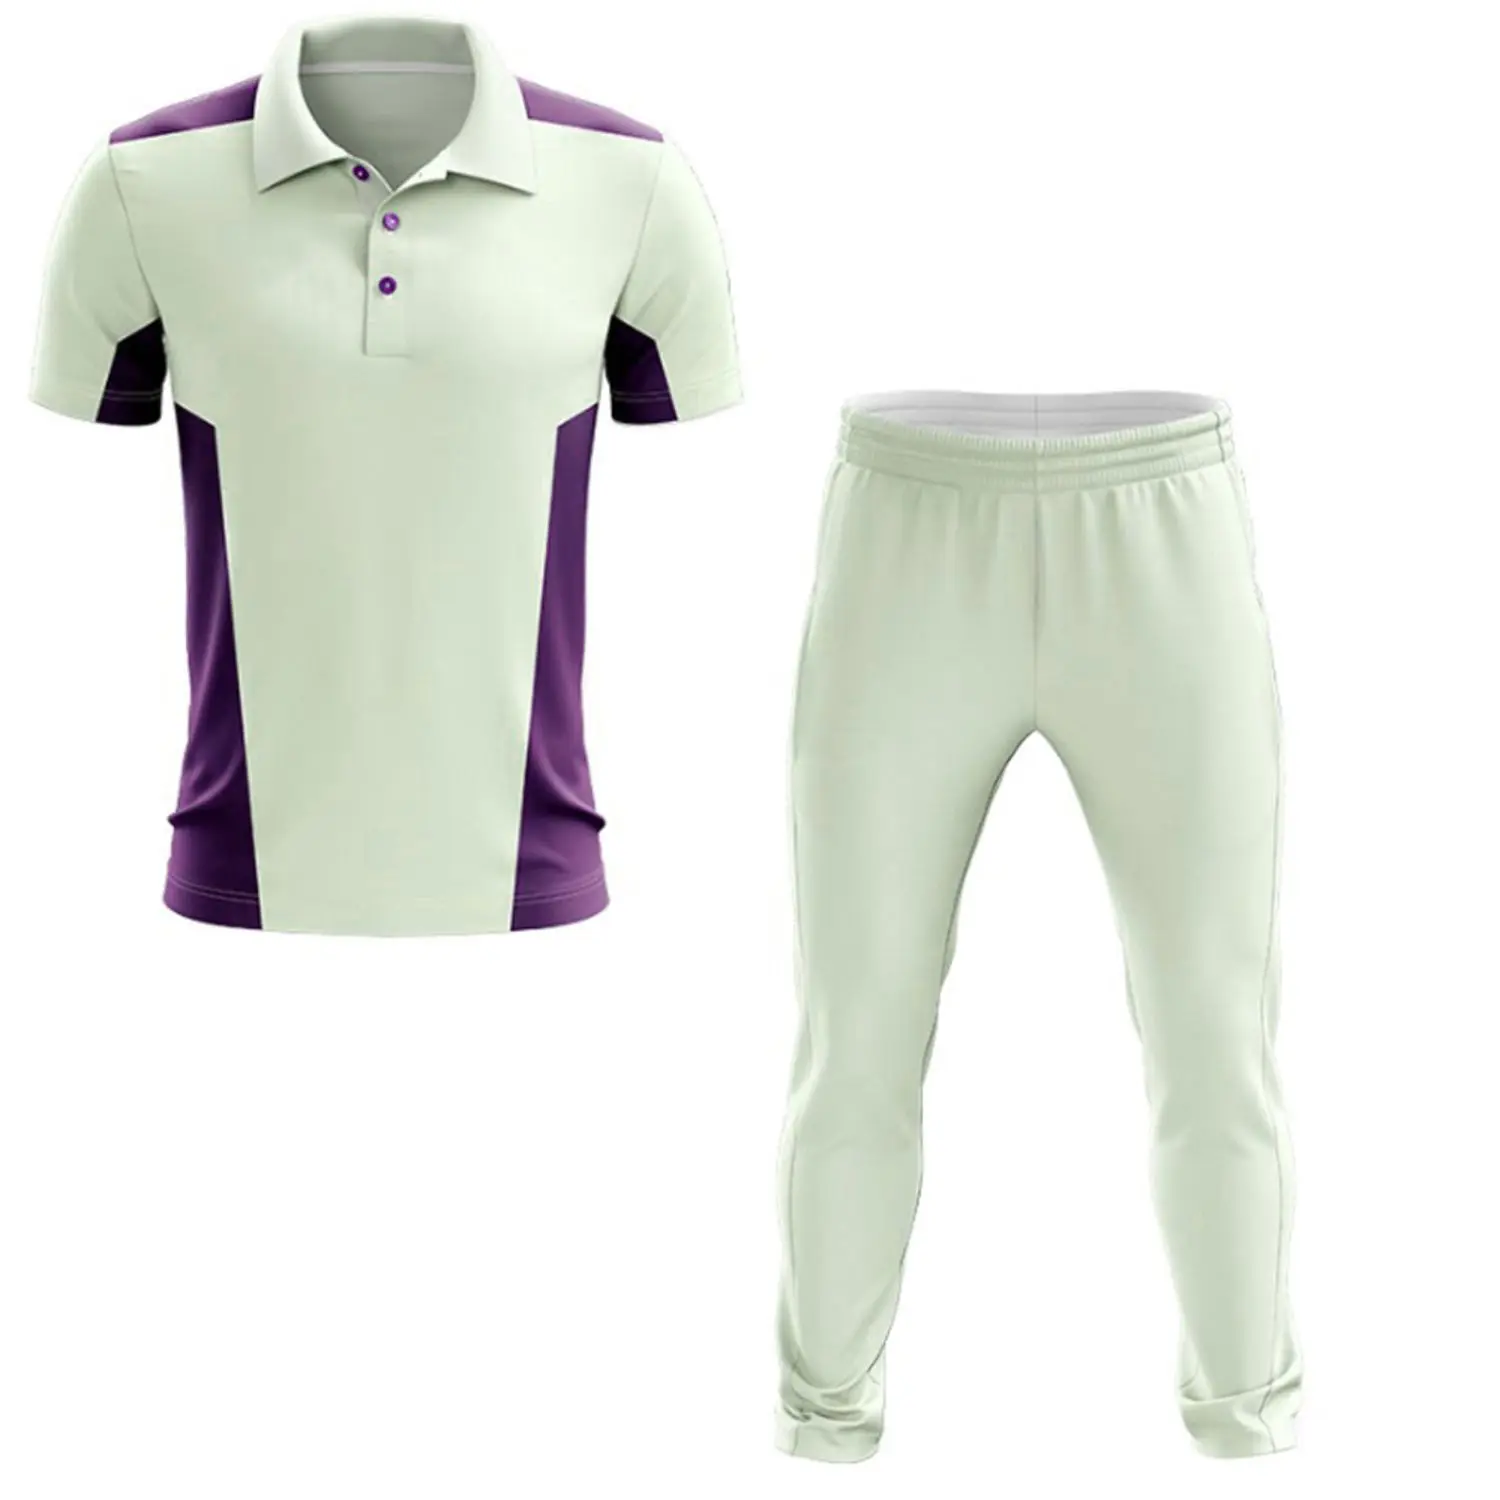 Premium leggero sublimato traspirante personalizzato per giovani da Cricket uniforme traspirante resistente all'umidità uniforme da Cricket classica